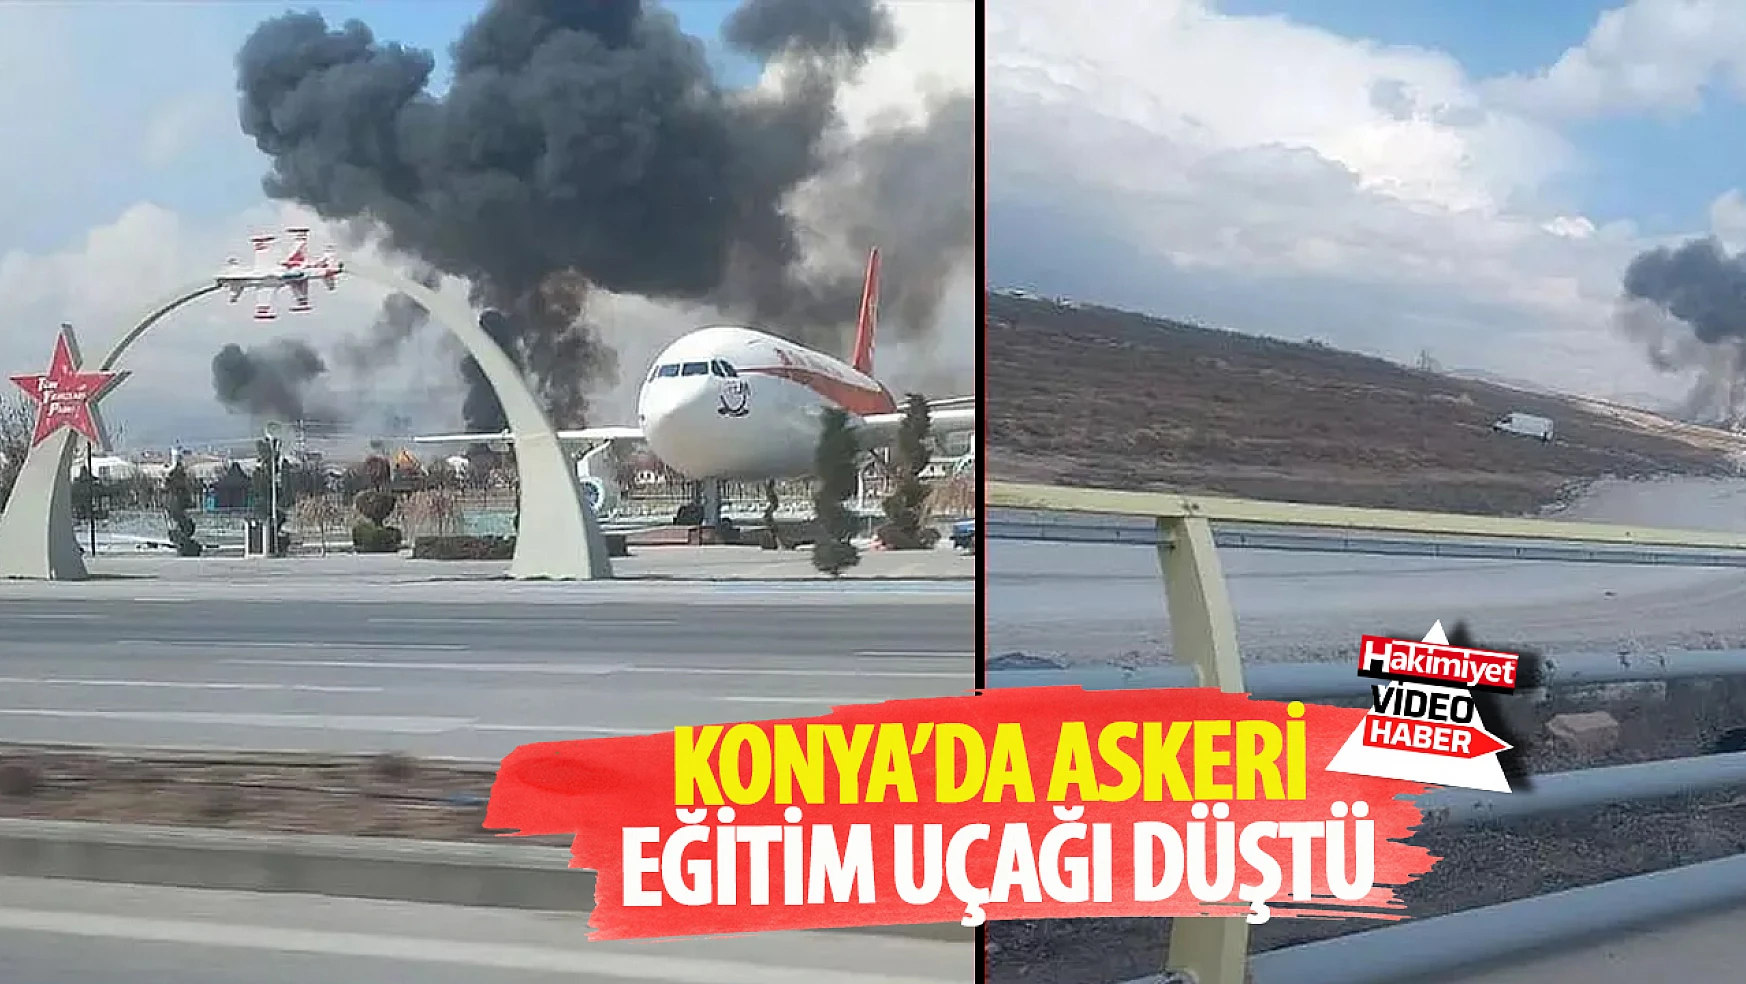 Konya'da askeri eğitim uçağı düştü: Kazaya ilişkin ilk video geldi!